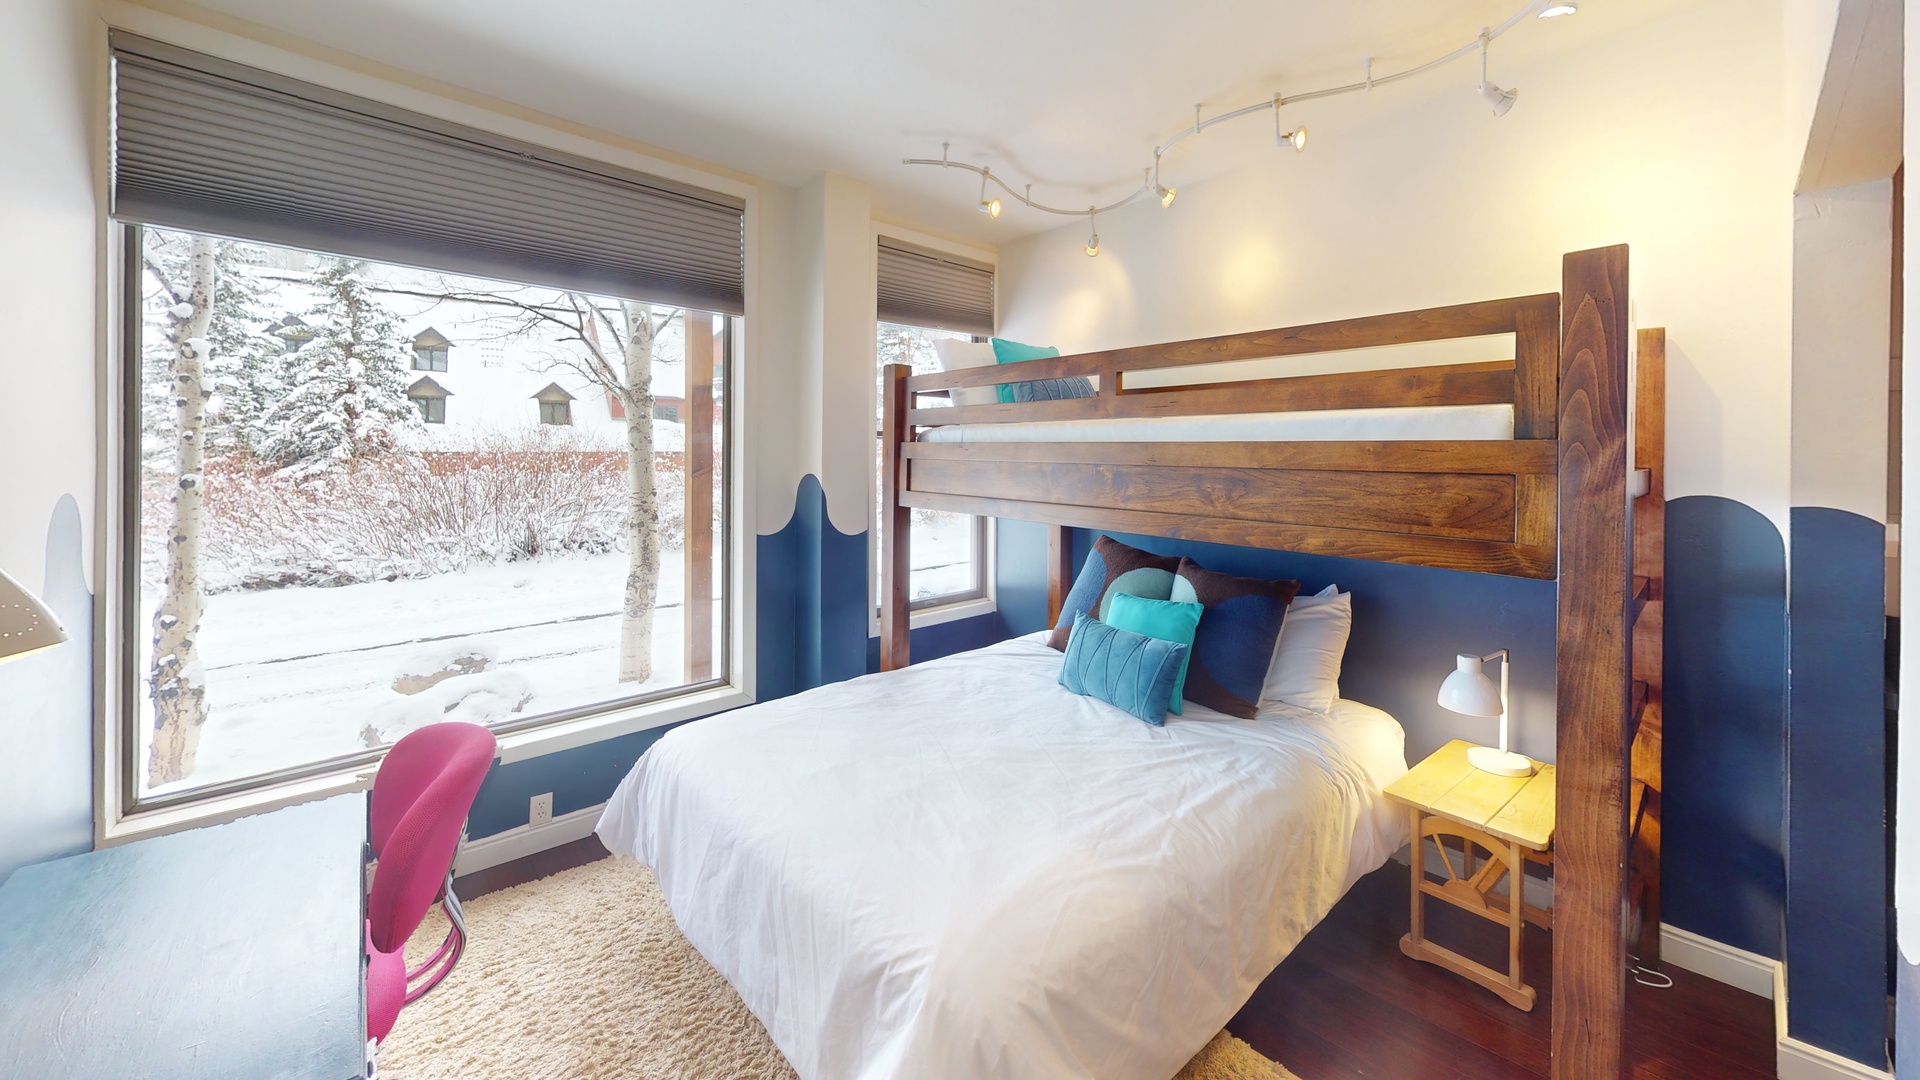 Guest Bedroom 2 - Queen lower, Twin top bunk